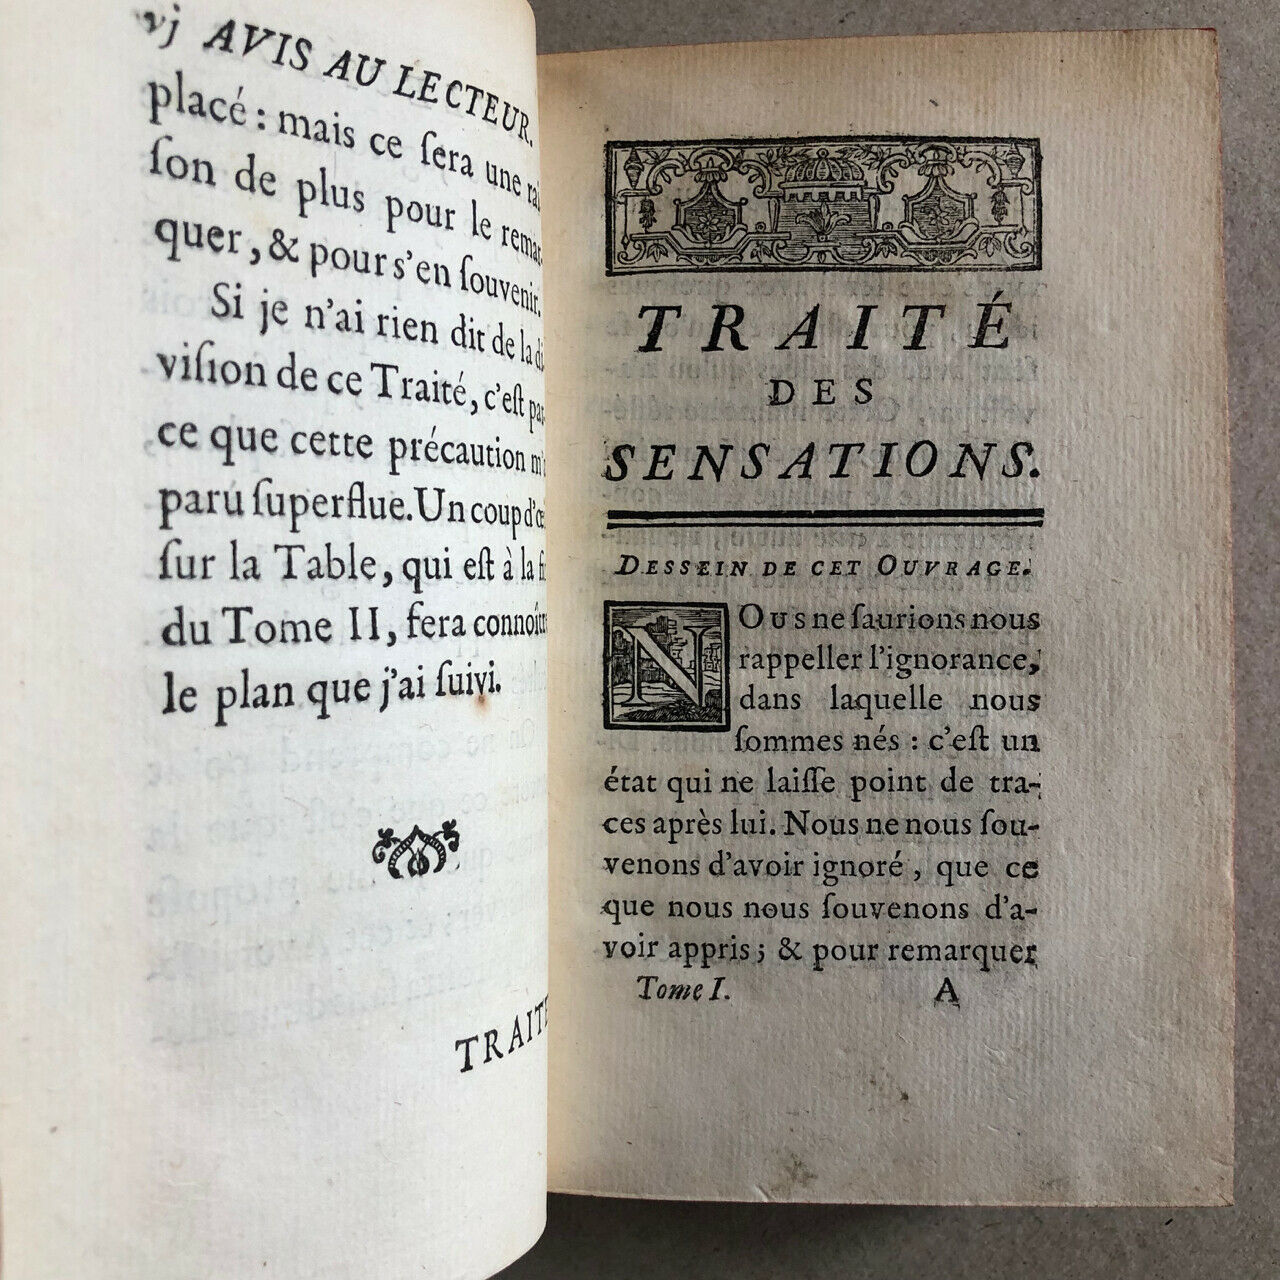 Condillac — Treatise on sensations — e.o. — arms binding — de Bure — 1754.